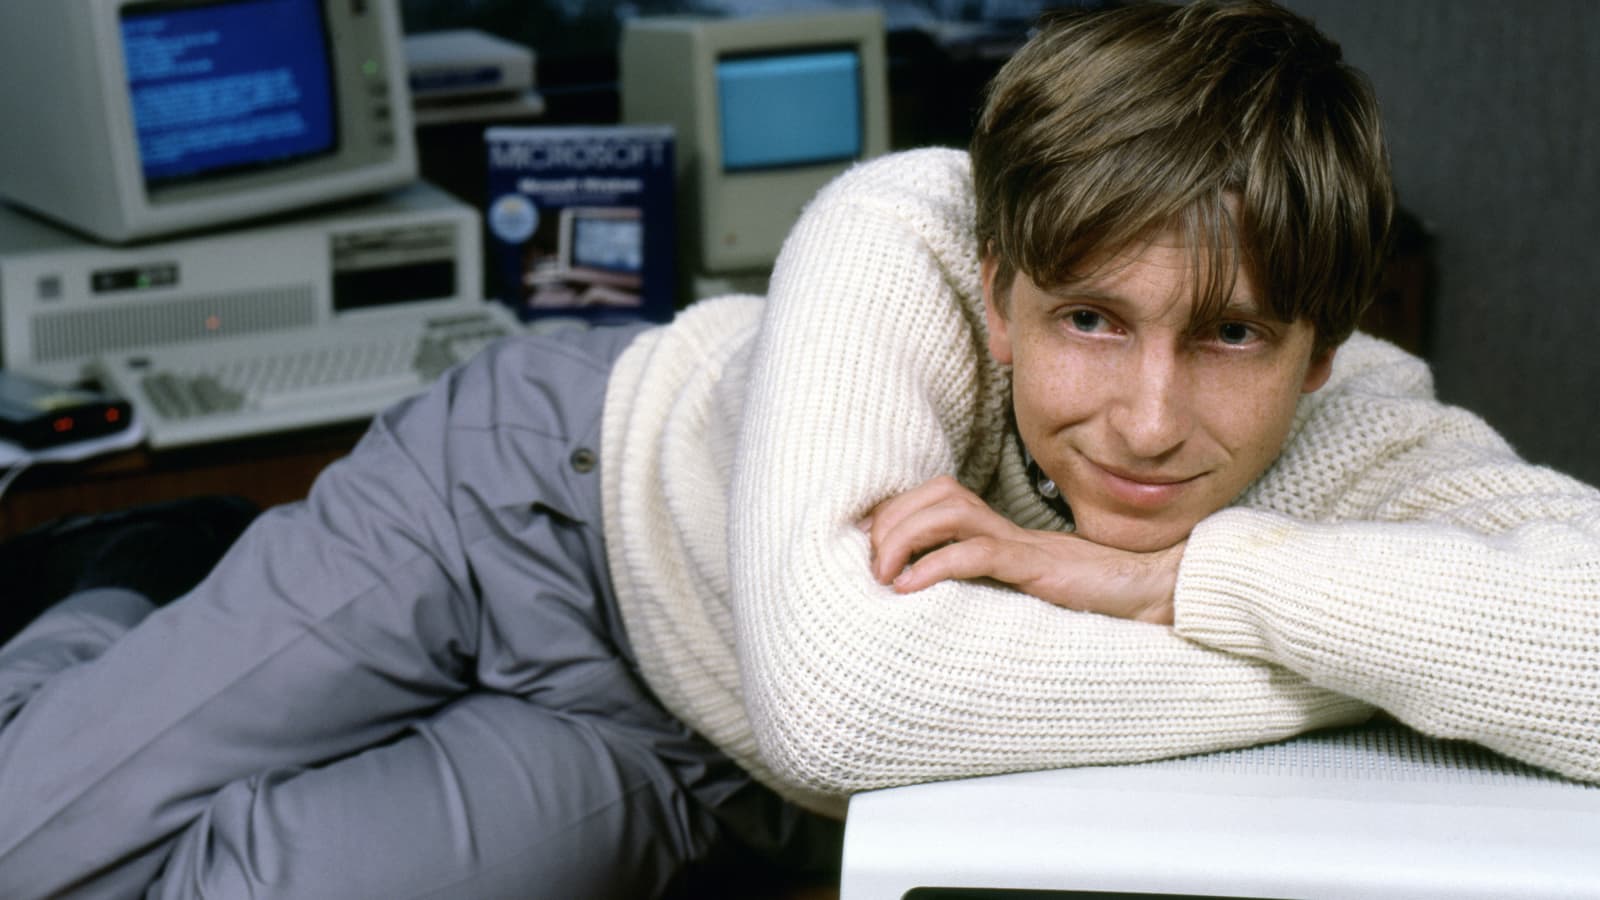 Όταν ο 18χρονος Bill Gates ζητούσε δουλειά: Τα 4 λάθη που δεν πρέπει να κάνετε